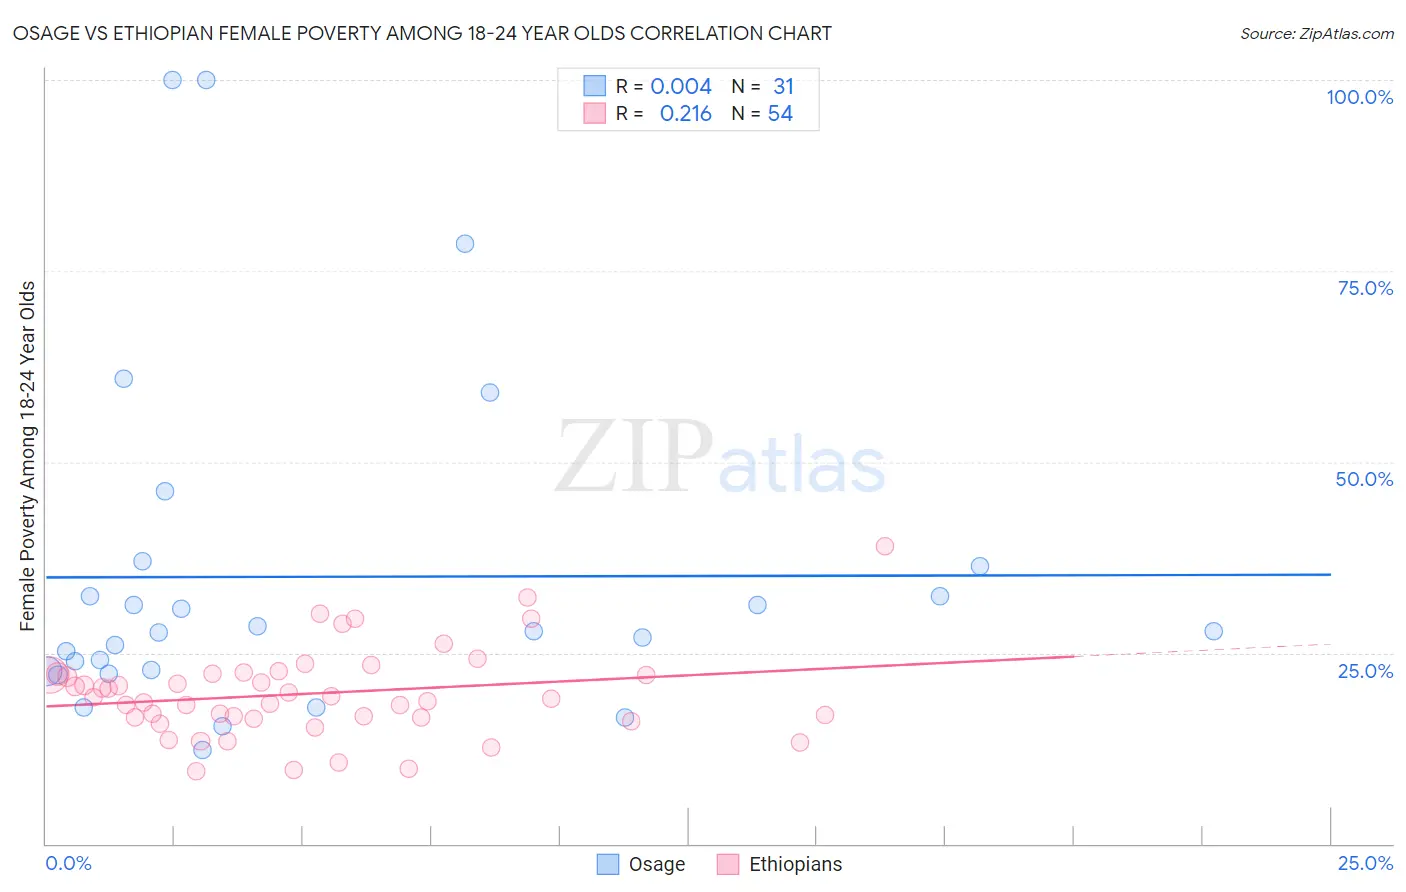 Osage vs Ethiopian Female Poverty Among 18-24 Year Olds